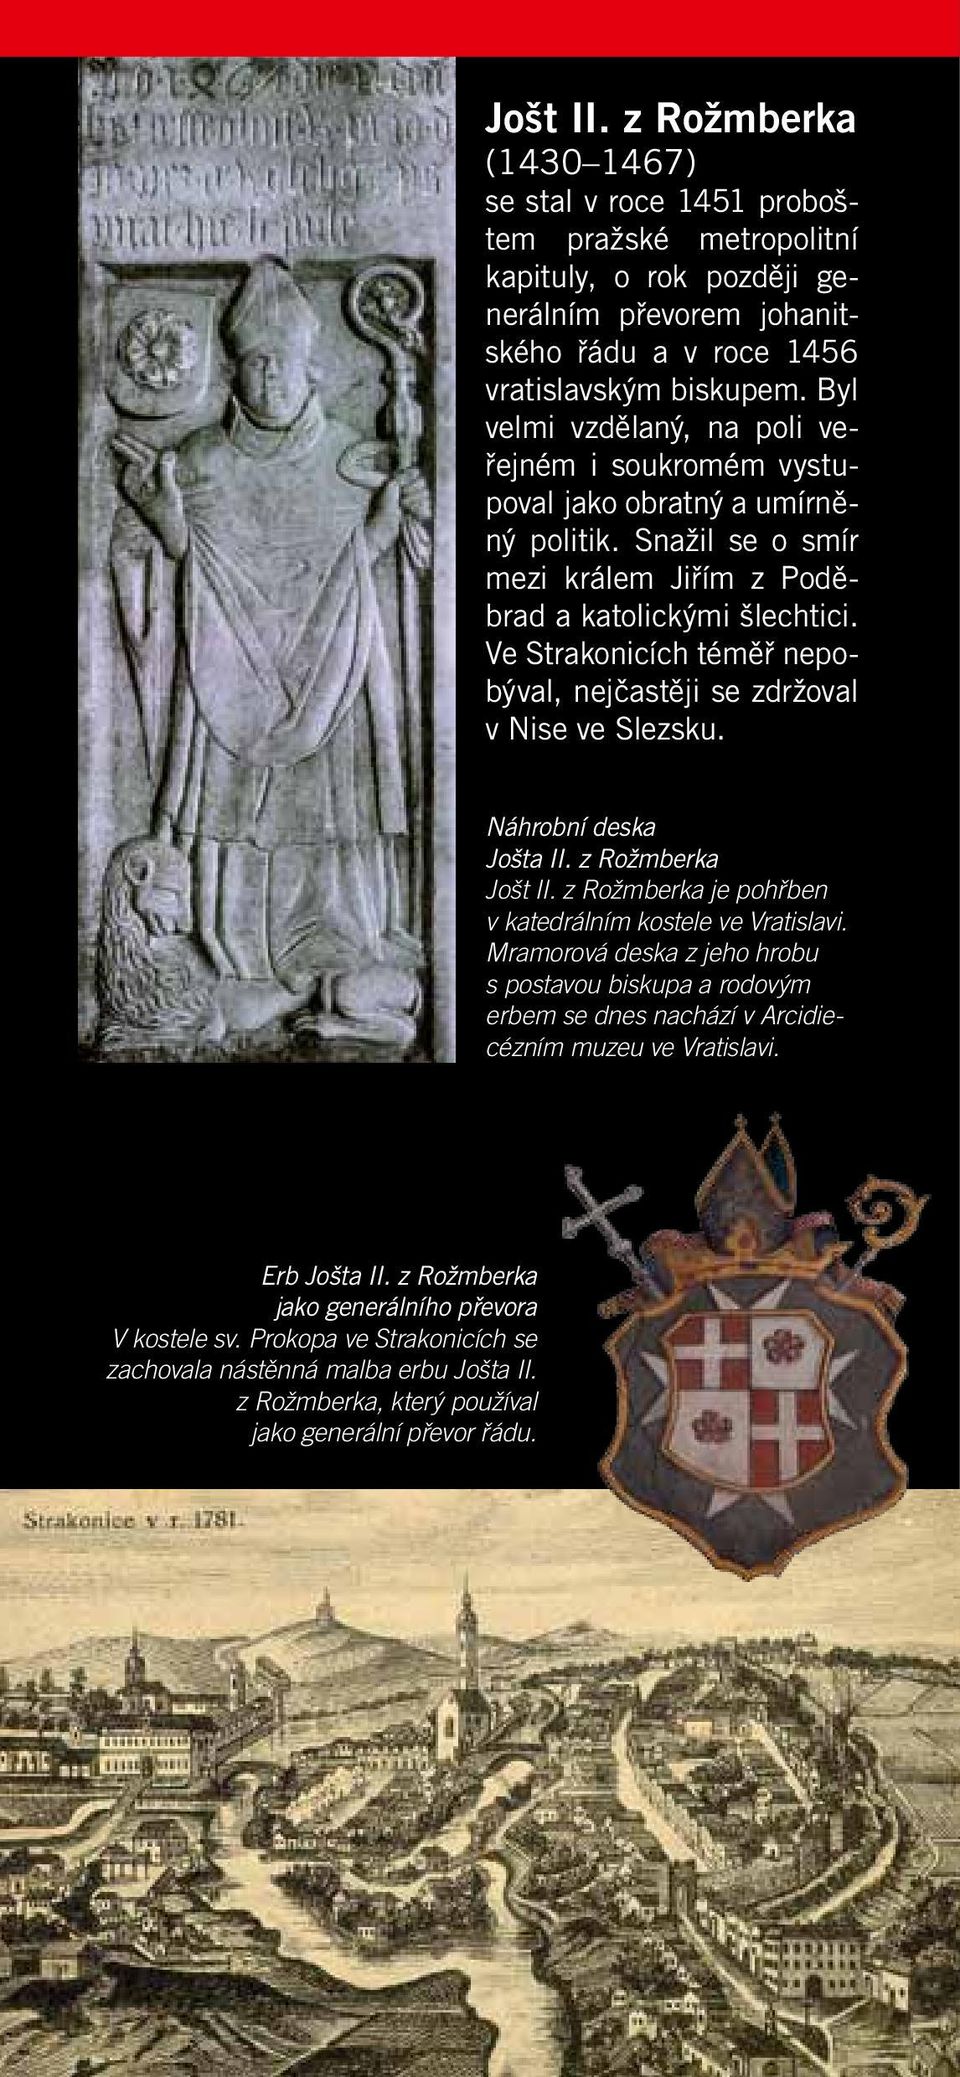 Ve Strakonicích téměř nepobýval, nejčastěji se zdržoval v Nise ve Slezsku. Náhrobní deska Jošta II. z Rožmberka Jošt II. z Rožmberka je pohřben v katedrálním kostele ve Vratislavi.